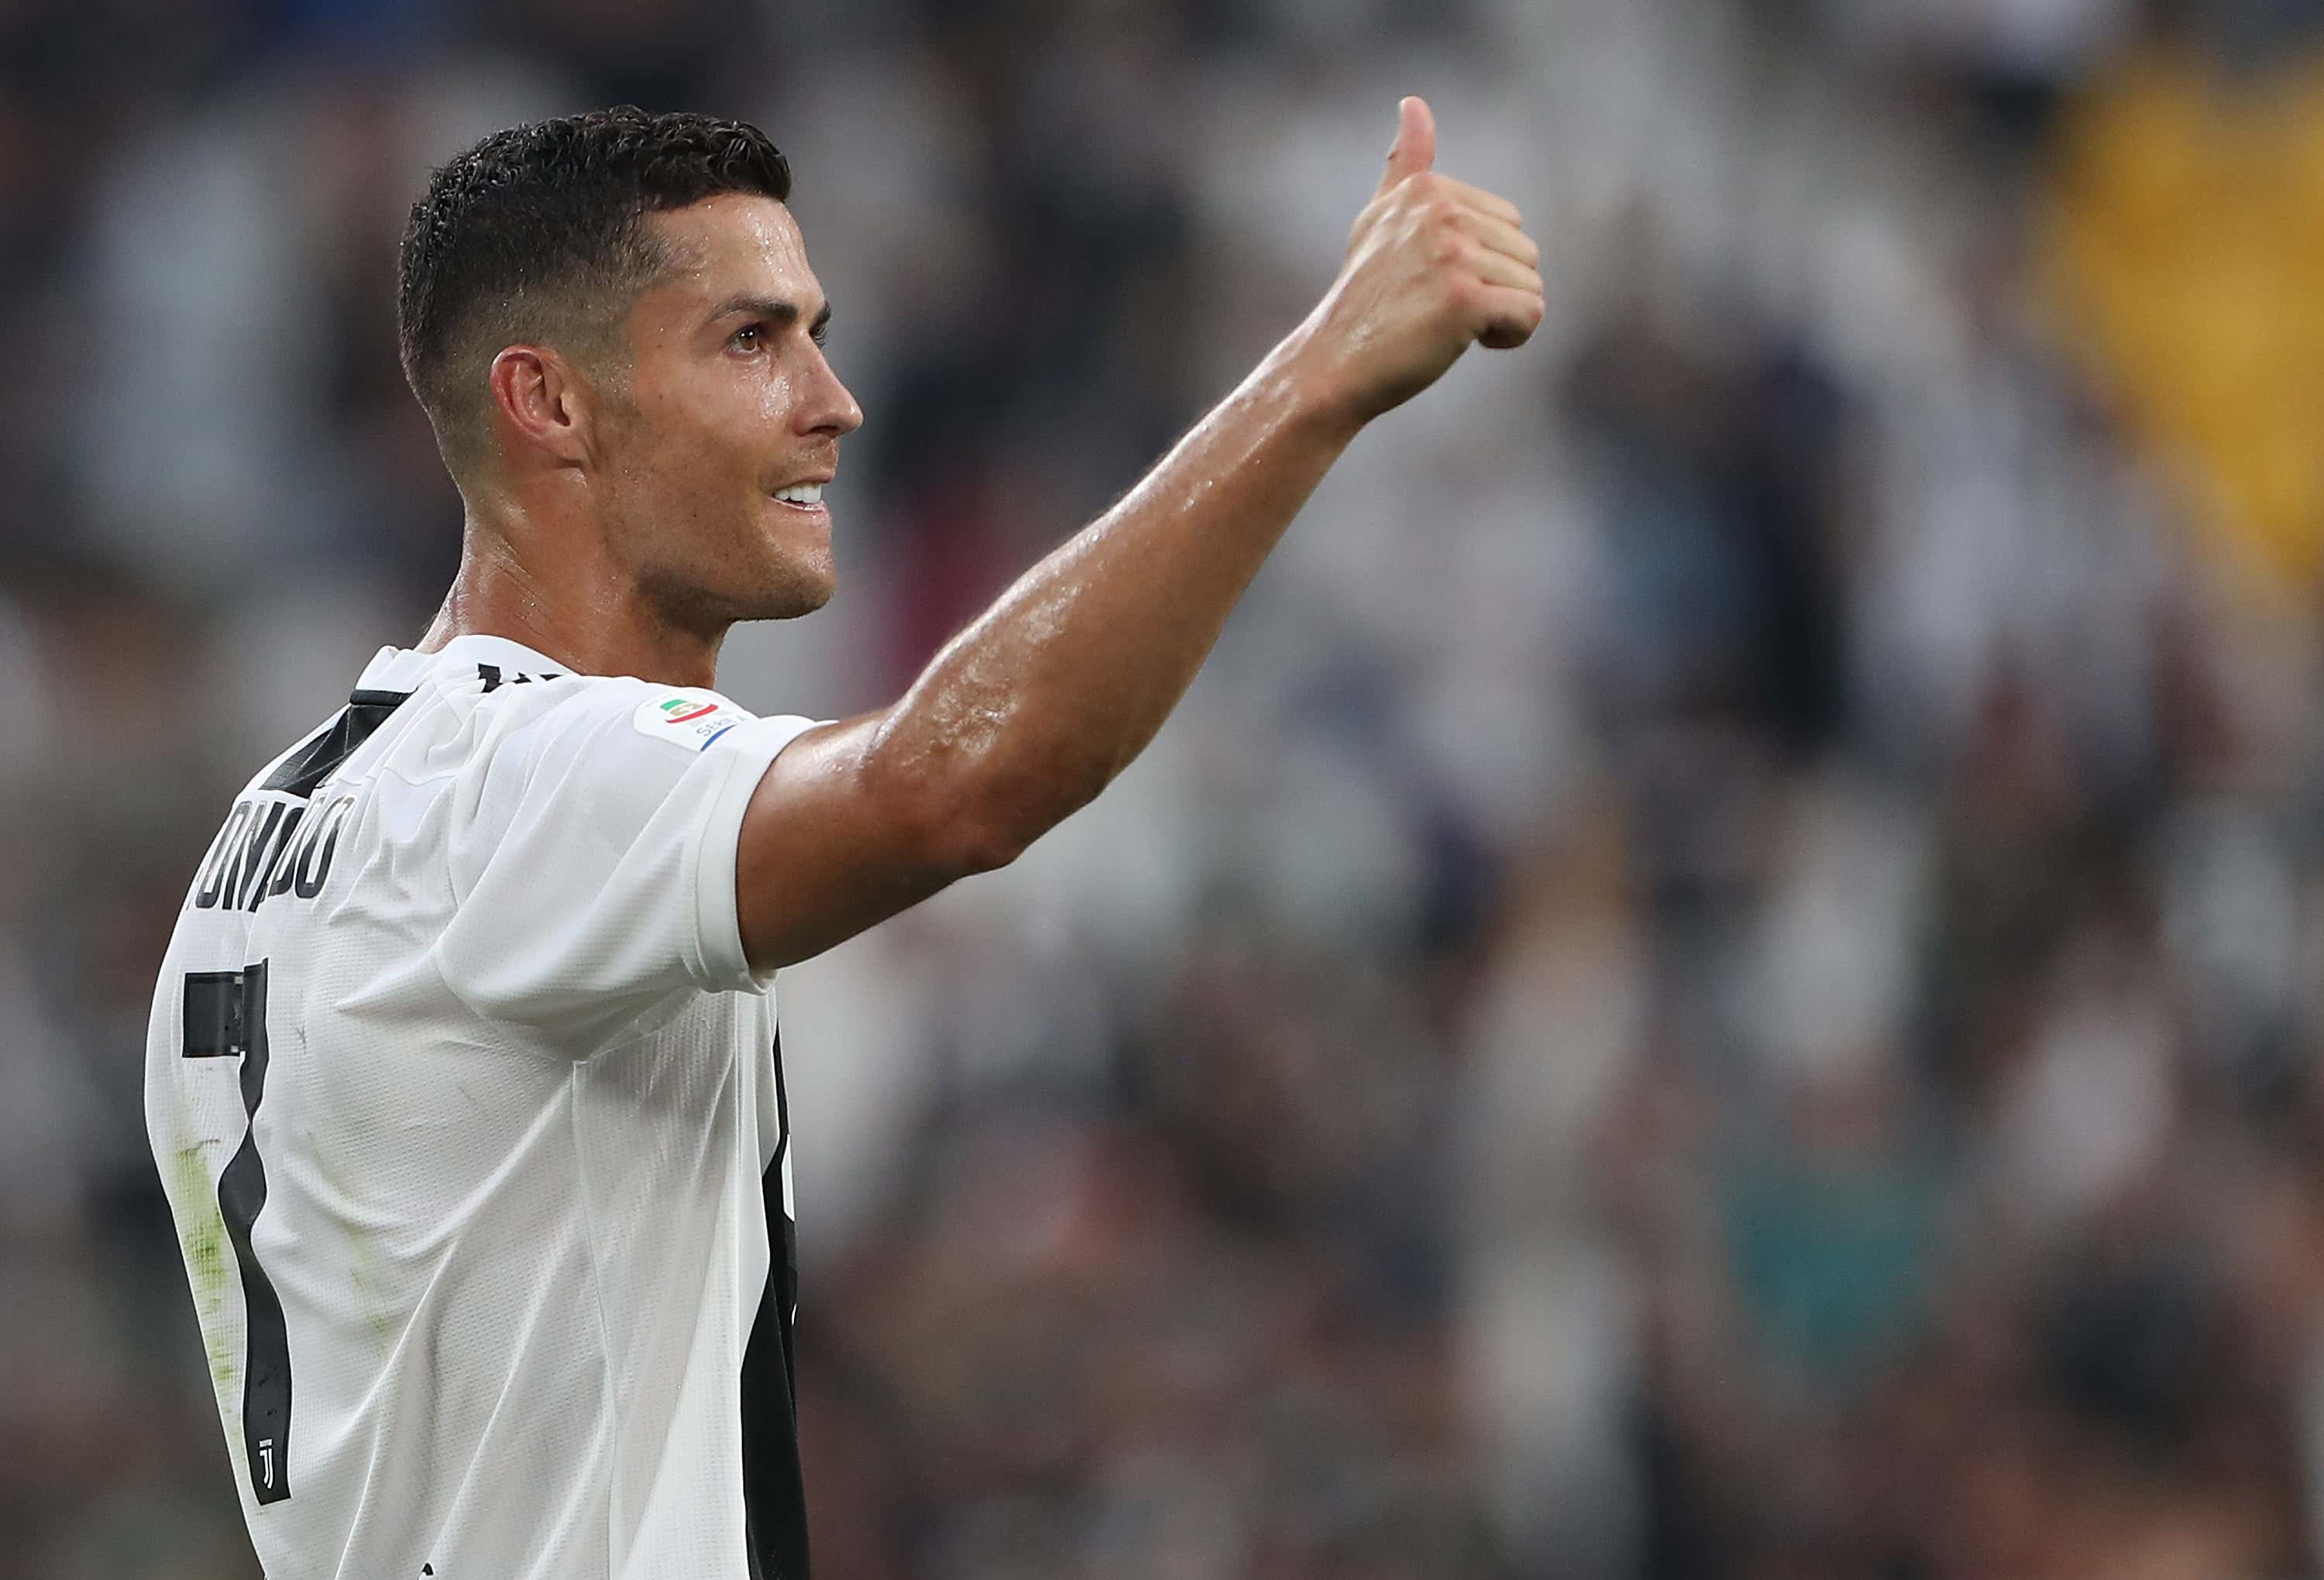 Cùng xem những hình ảnh Ronaldo trong trận đấu giữa Bồ Đào Nha và Tây Ban Nha, nhất định sẽ khiến bạn cảm thấy tự hào vì những nỗ lực của ngôi sao bóng đá này.